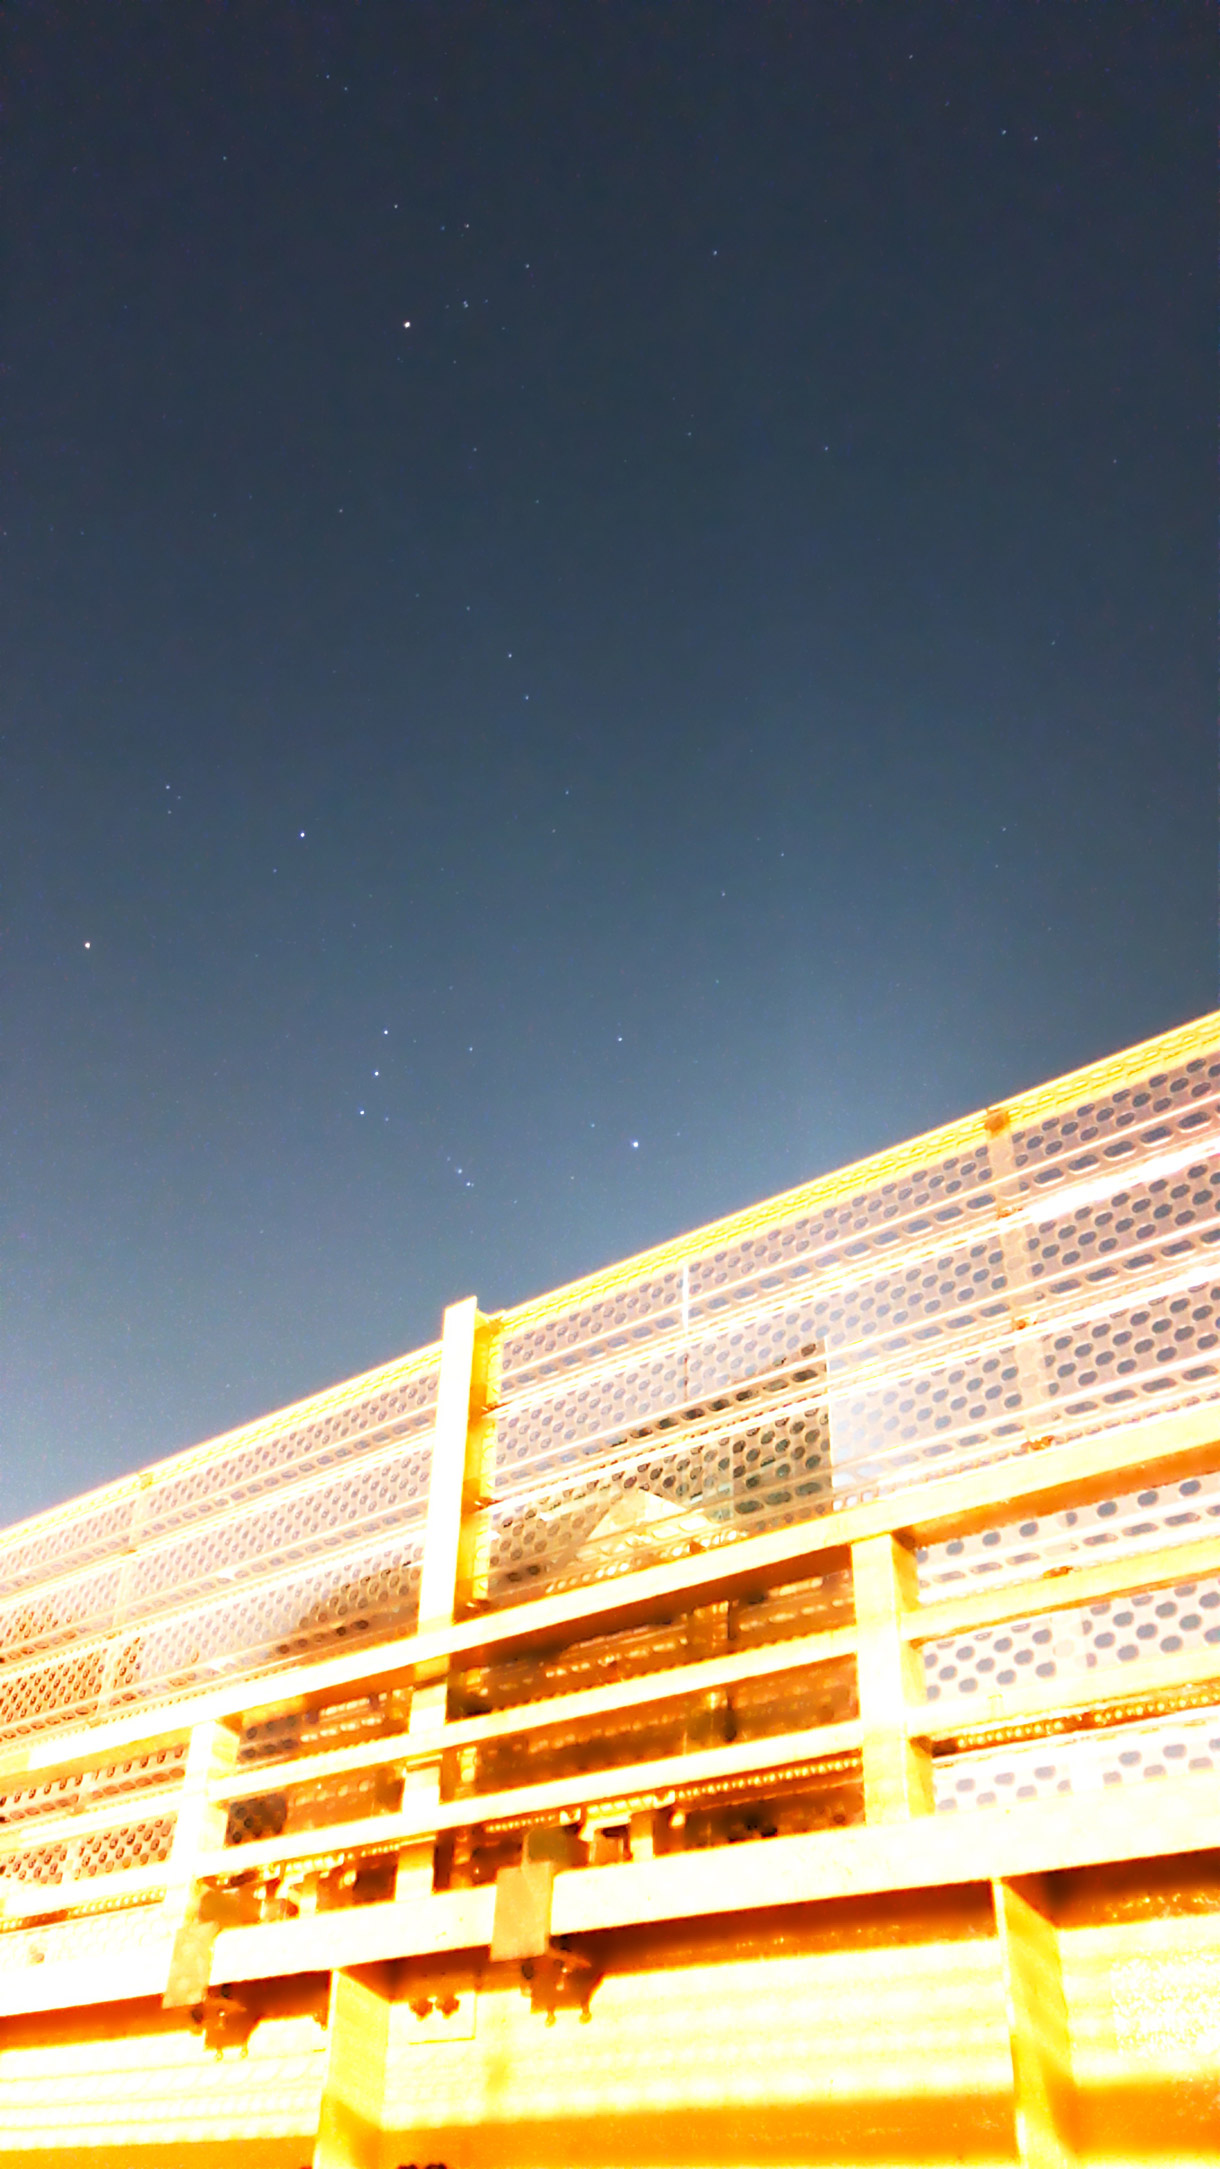 ホタル 星降るカメラ iPhoneアプリ 撮影 stars astrophotography galaxy